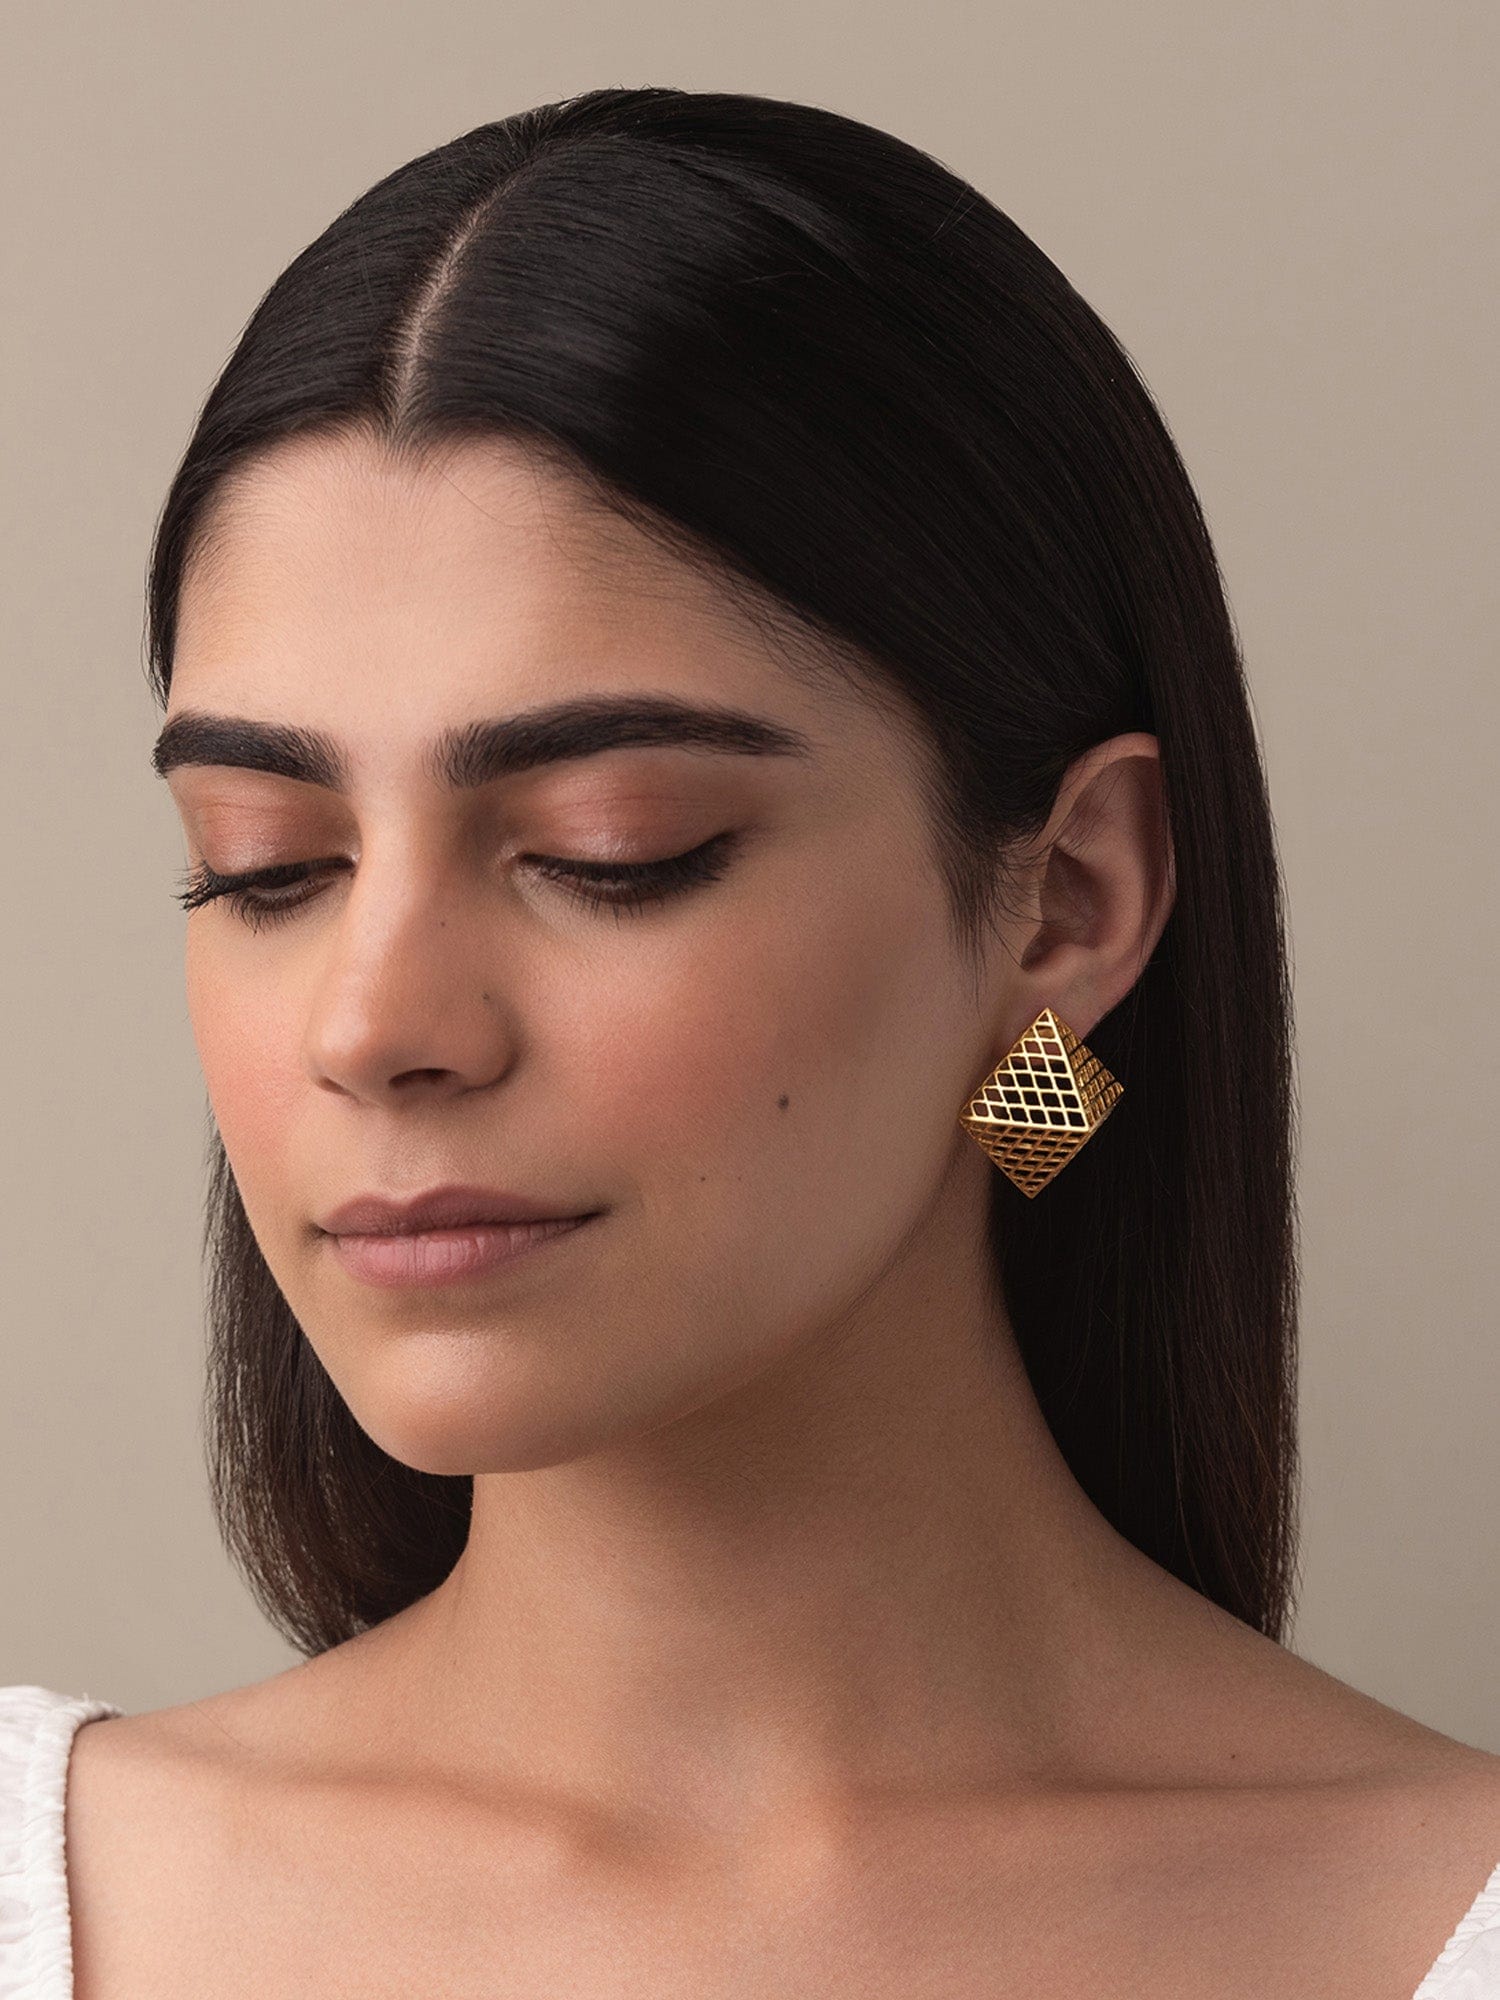 Louvre earrings